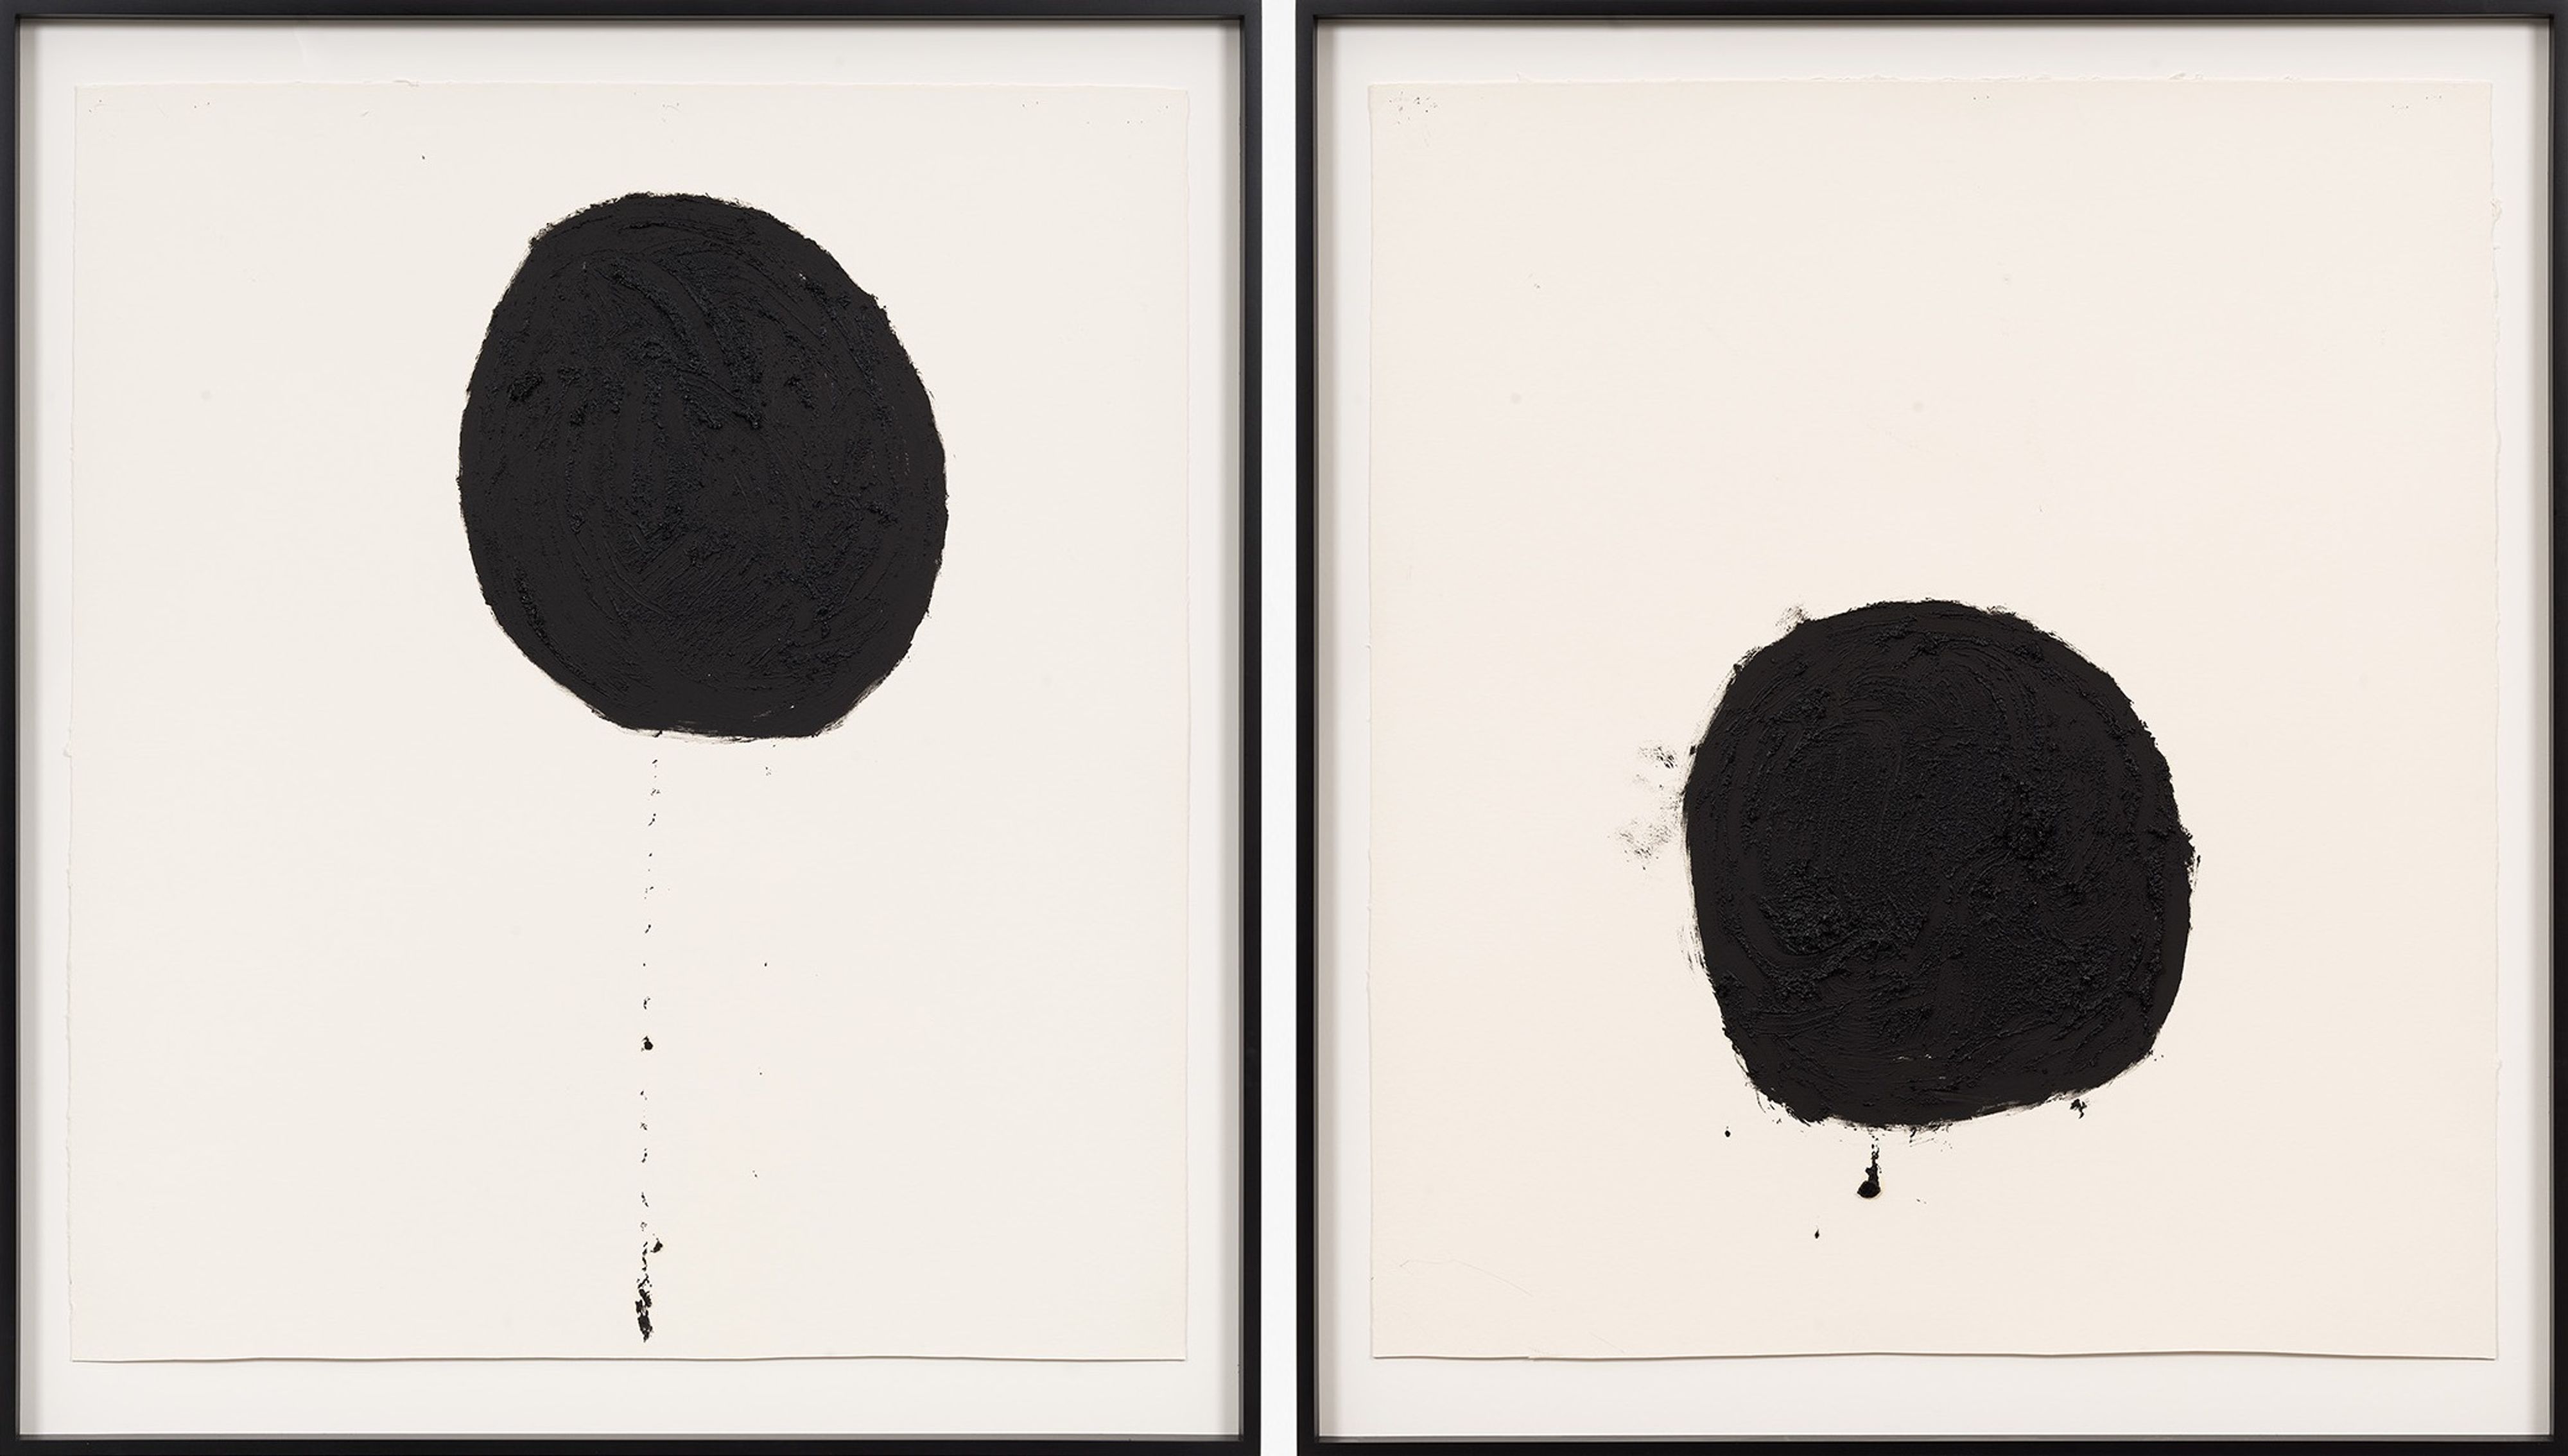 Milano, 40 opere di Richard Serra in mostra da Cardi Gallery